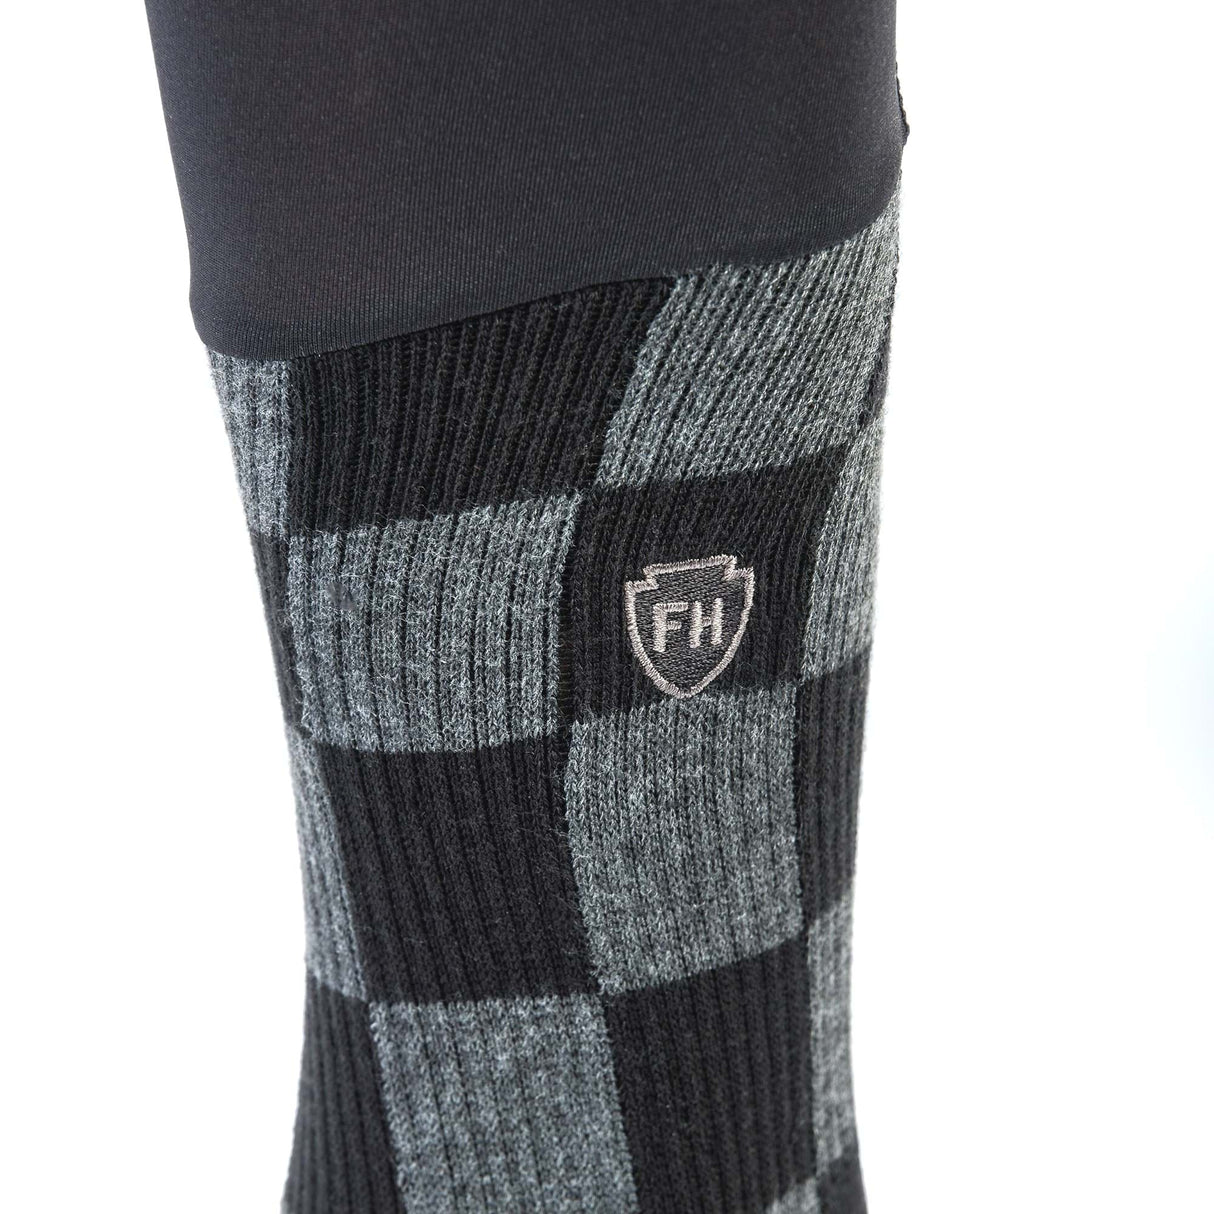 Fasthouse Legacy Knee Brace Sock